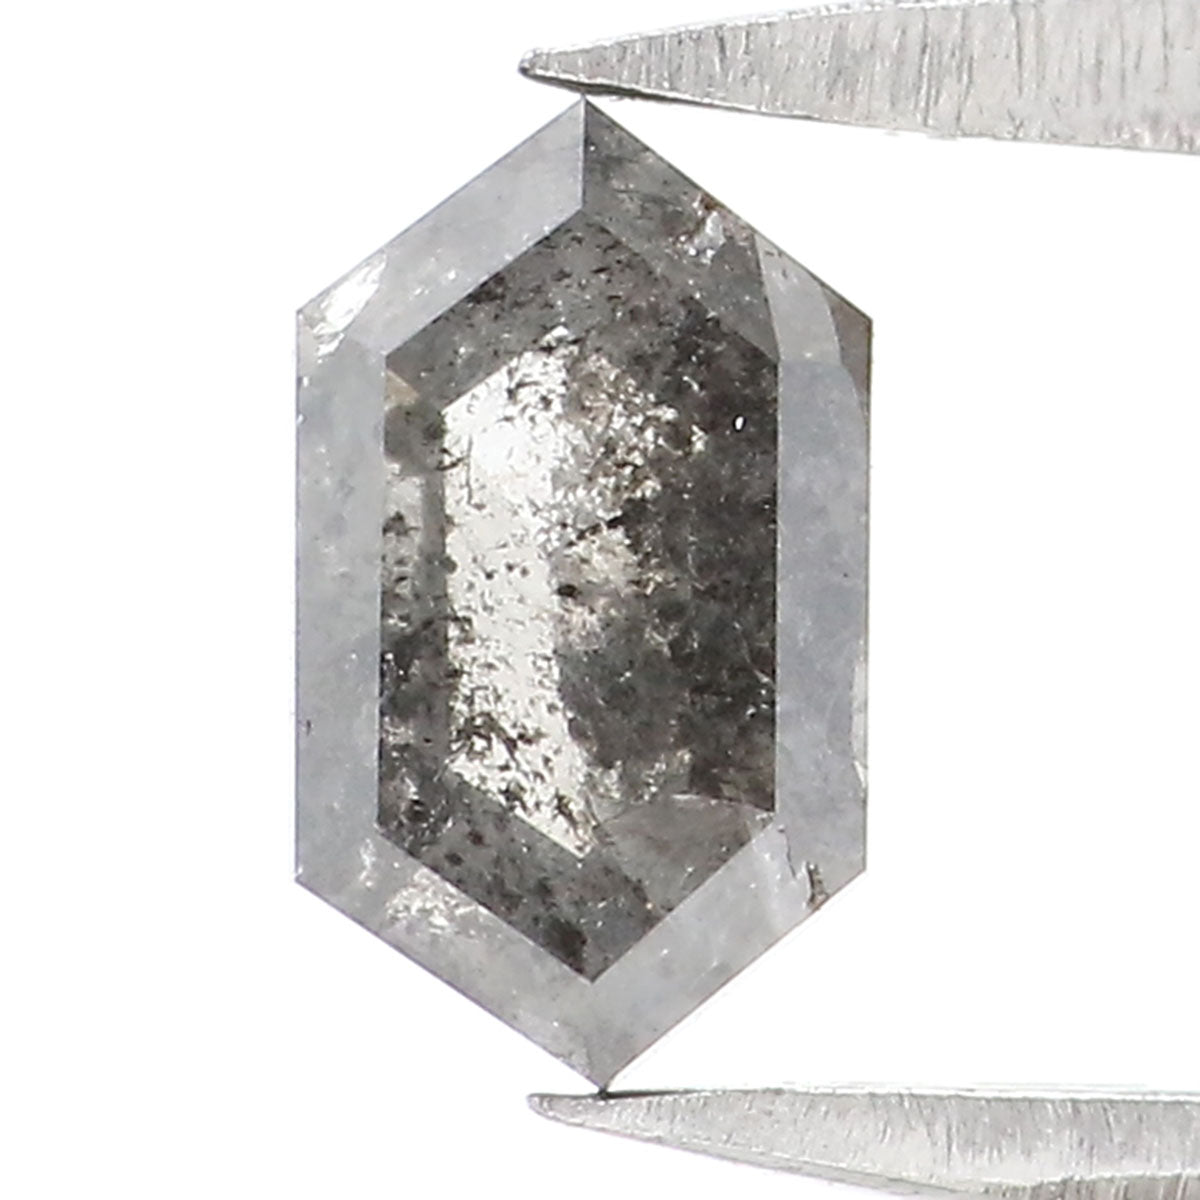 0.48 CT Natural Loose Hexagon Cut Diamond Salt And Pepper Hexagon Diamond 6.40 MM Natural Loose Black Grey Color Hexagon Cut Diamond QL2472